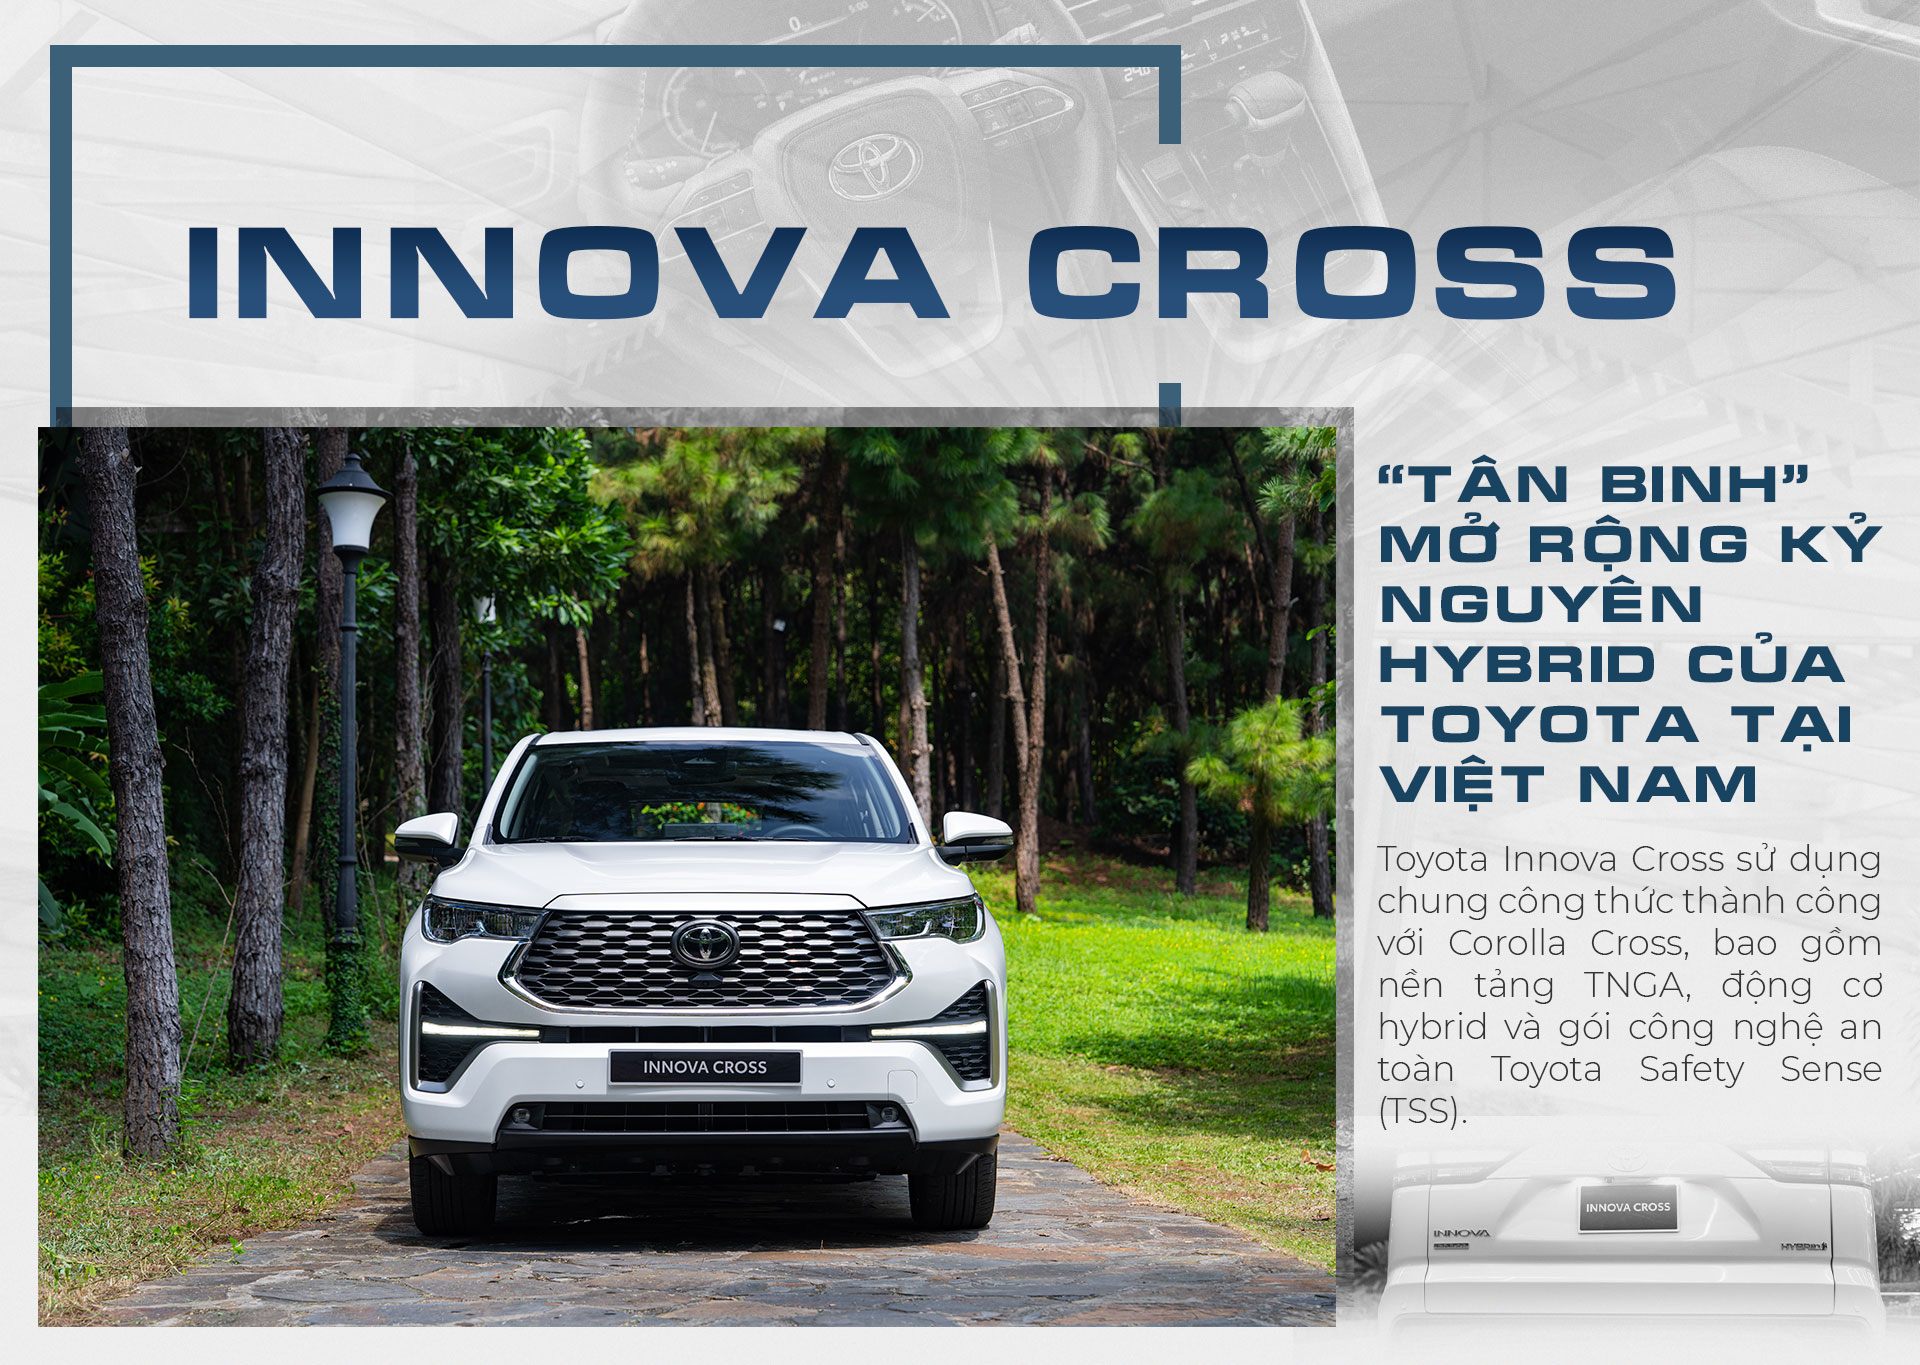 Toyota Innova Cross, tân binh mở rộng kỷ nguyên Hybrid của Toyota